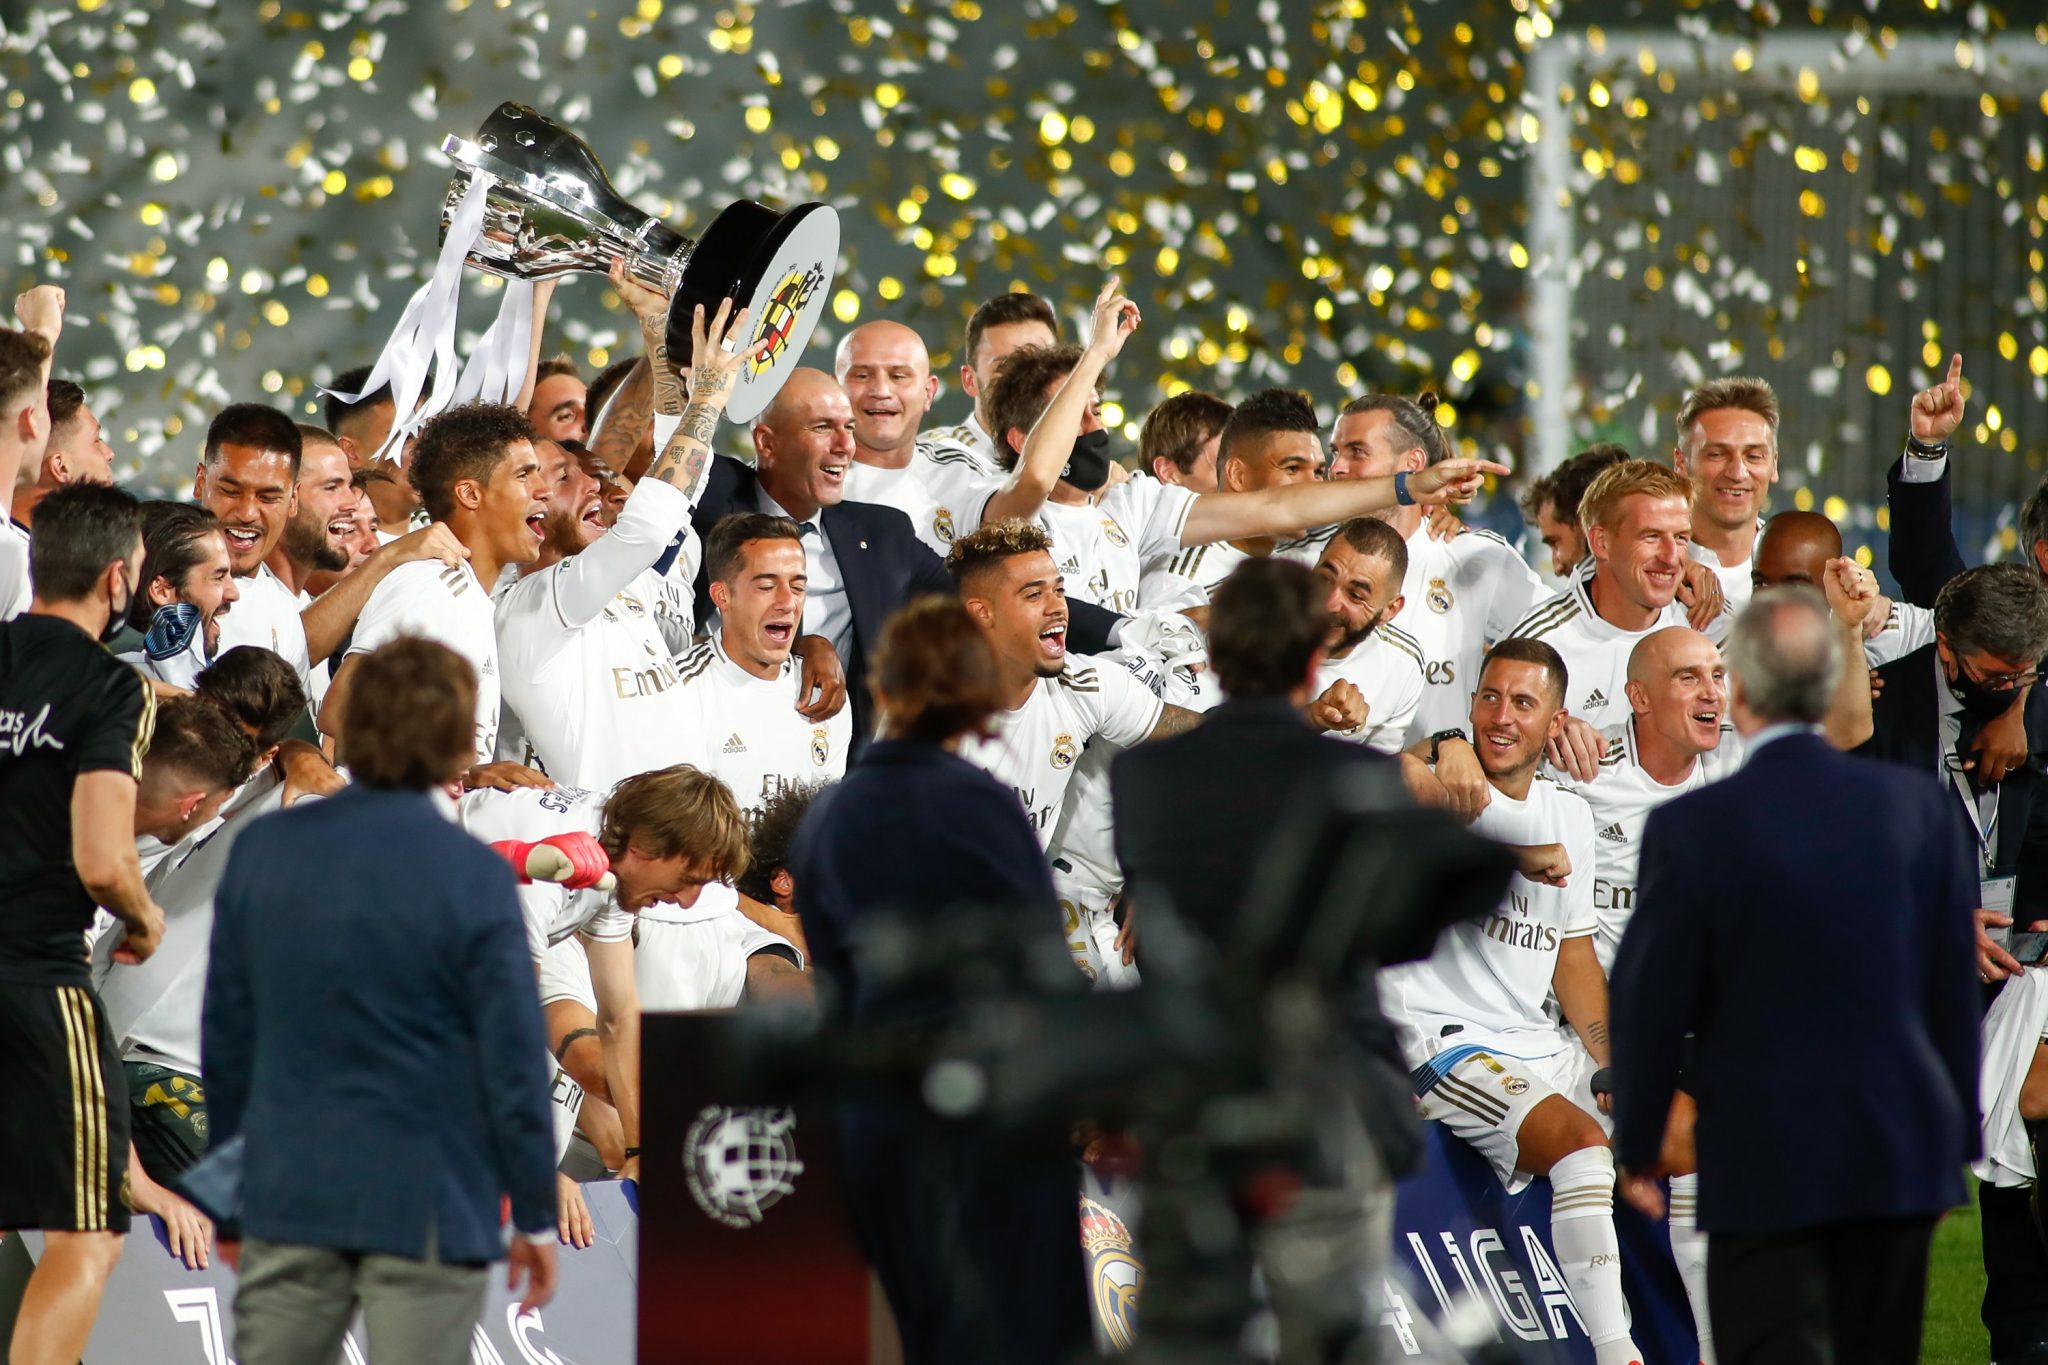 Equipo del Real Madrid festejando el campeonato con la copa y confetti cayendo desde arriba.